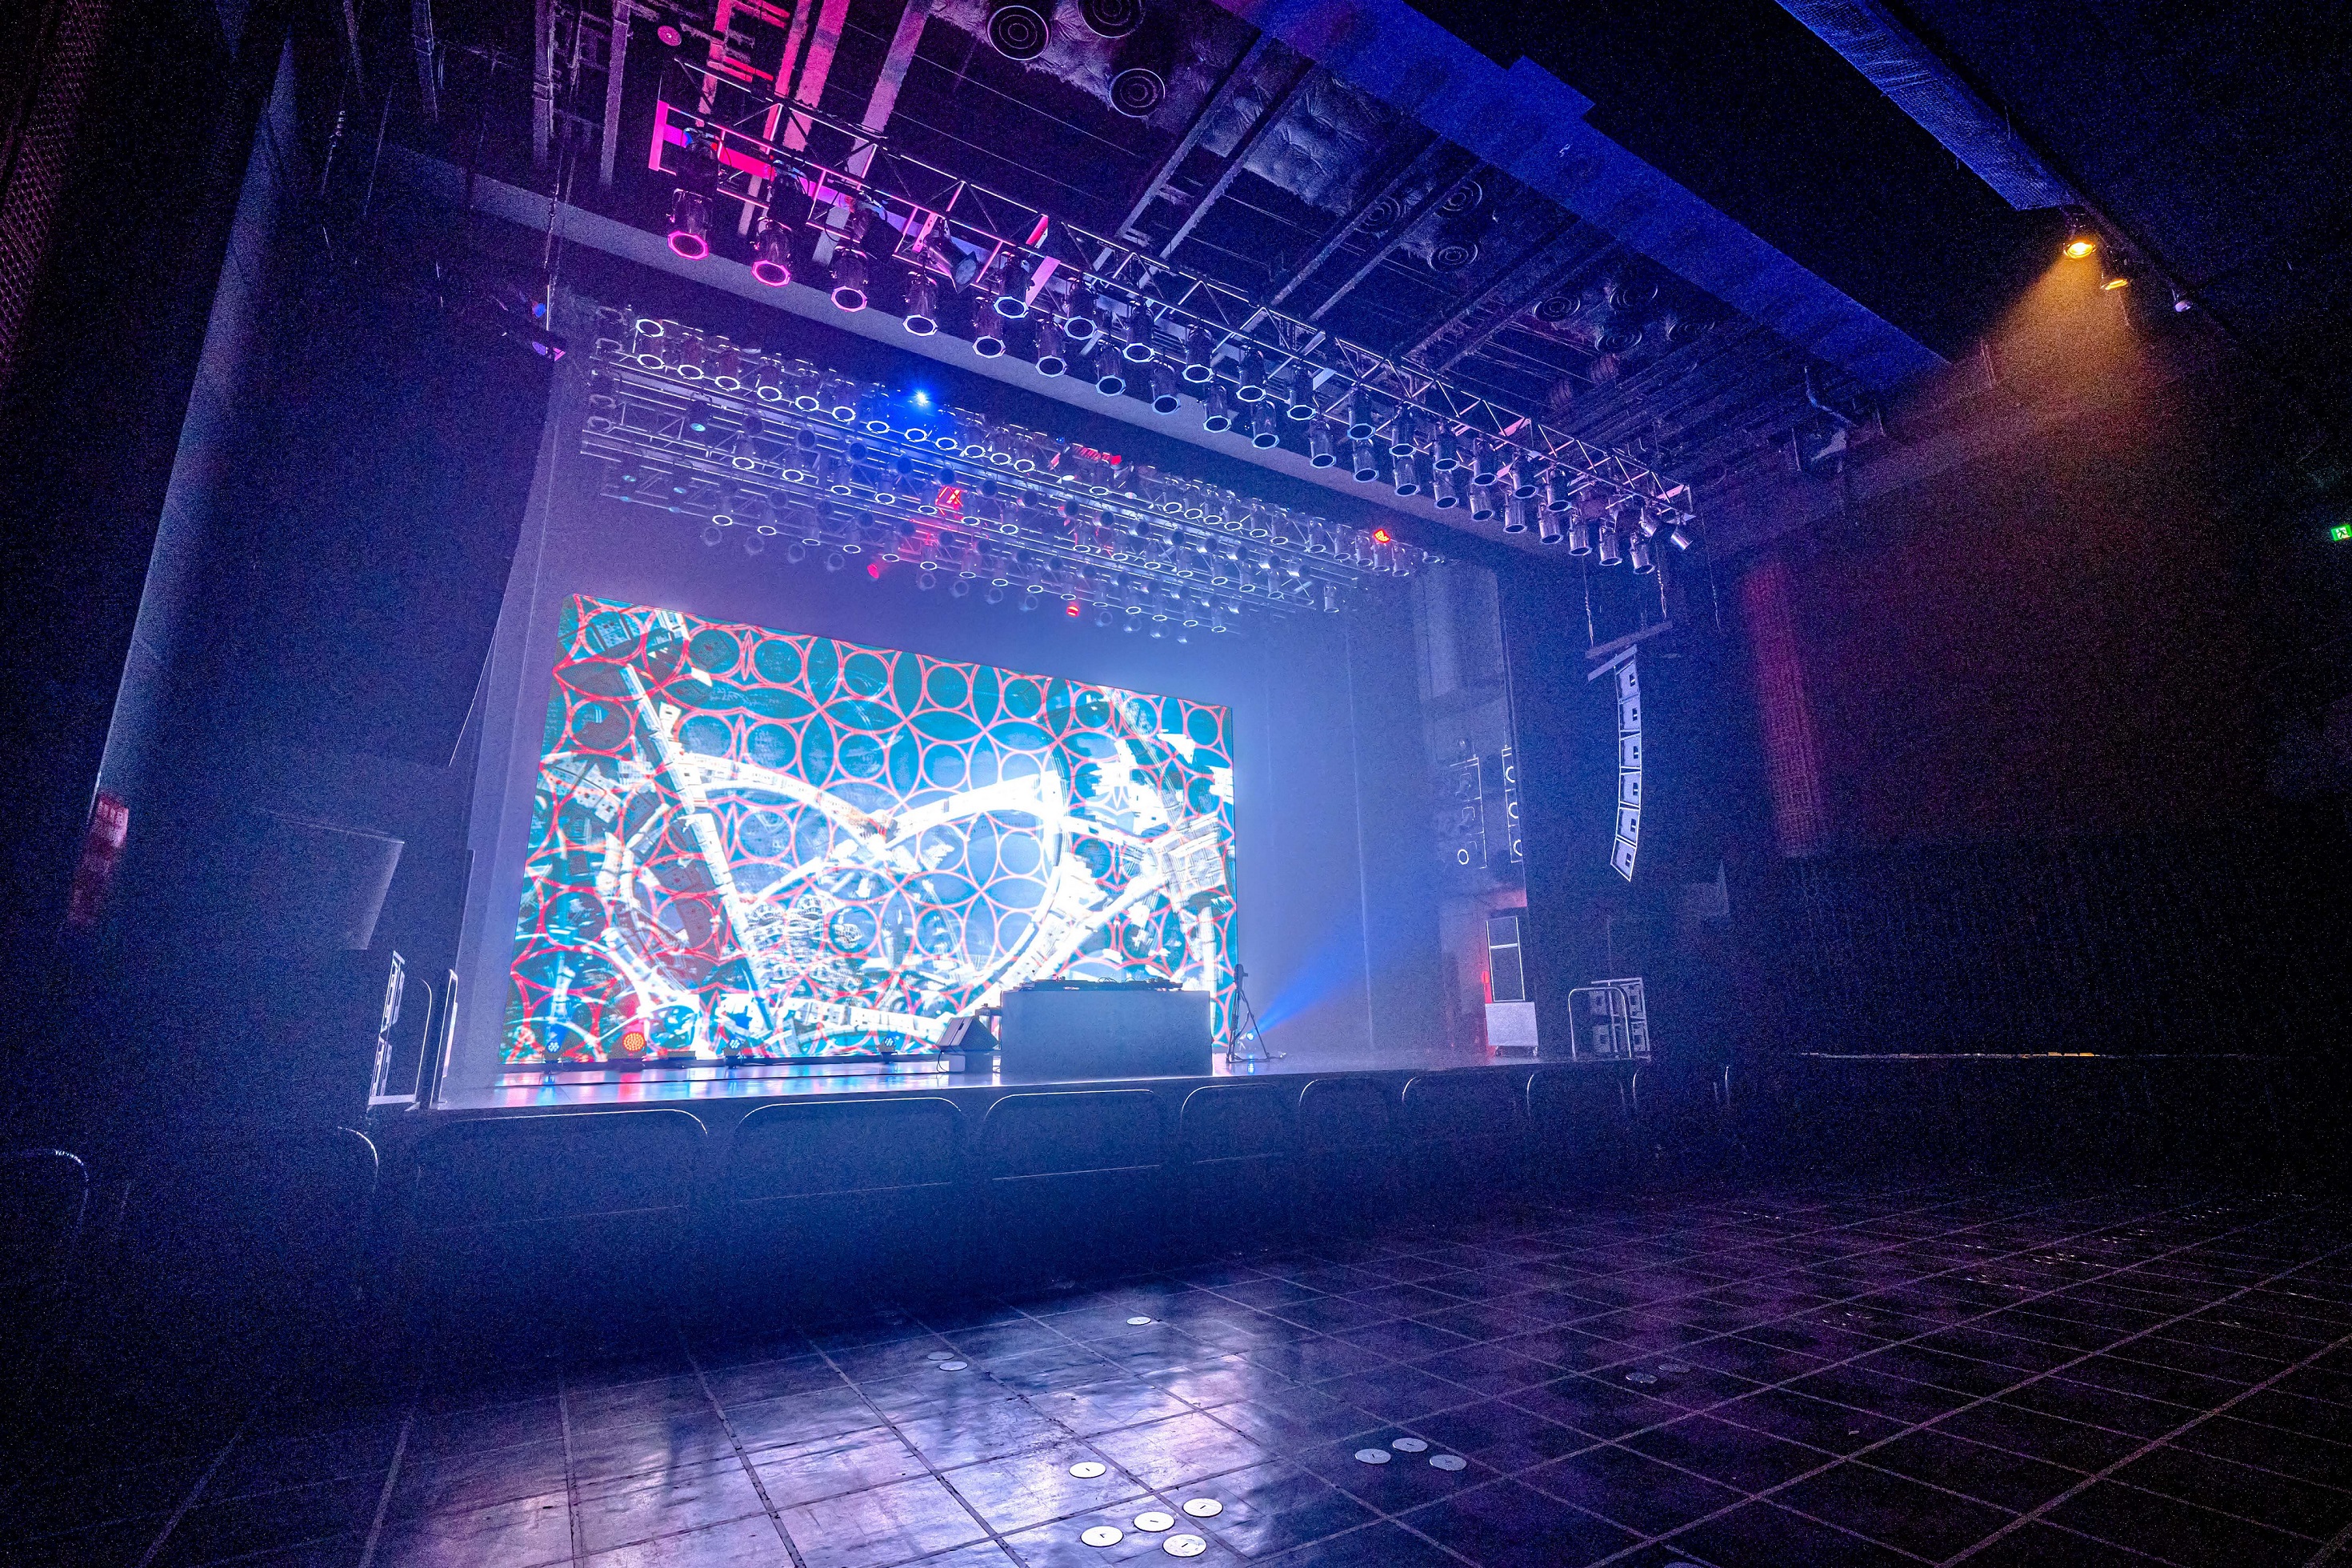 渋谷ライブハウス Tsutaya O Eastステージ背面大型ledビジョン導入 大幅リニューアルのお知らせ 株式会社シブヤテレビジョンのプレスリリース